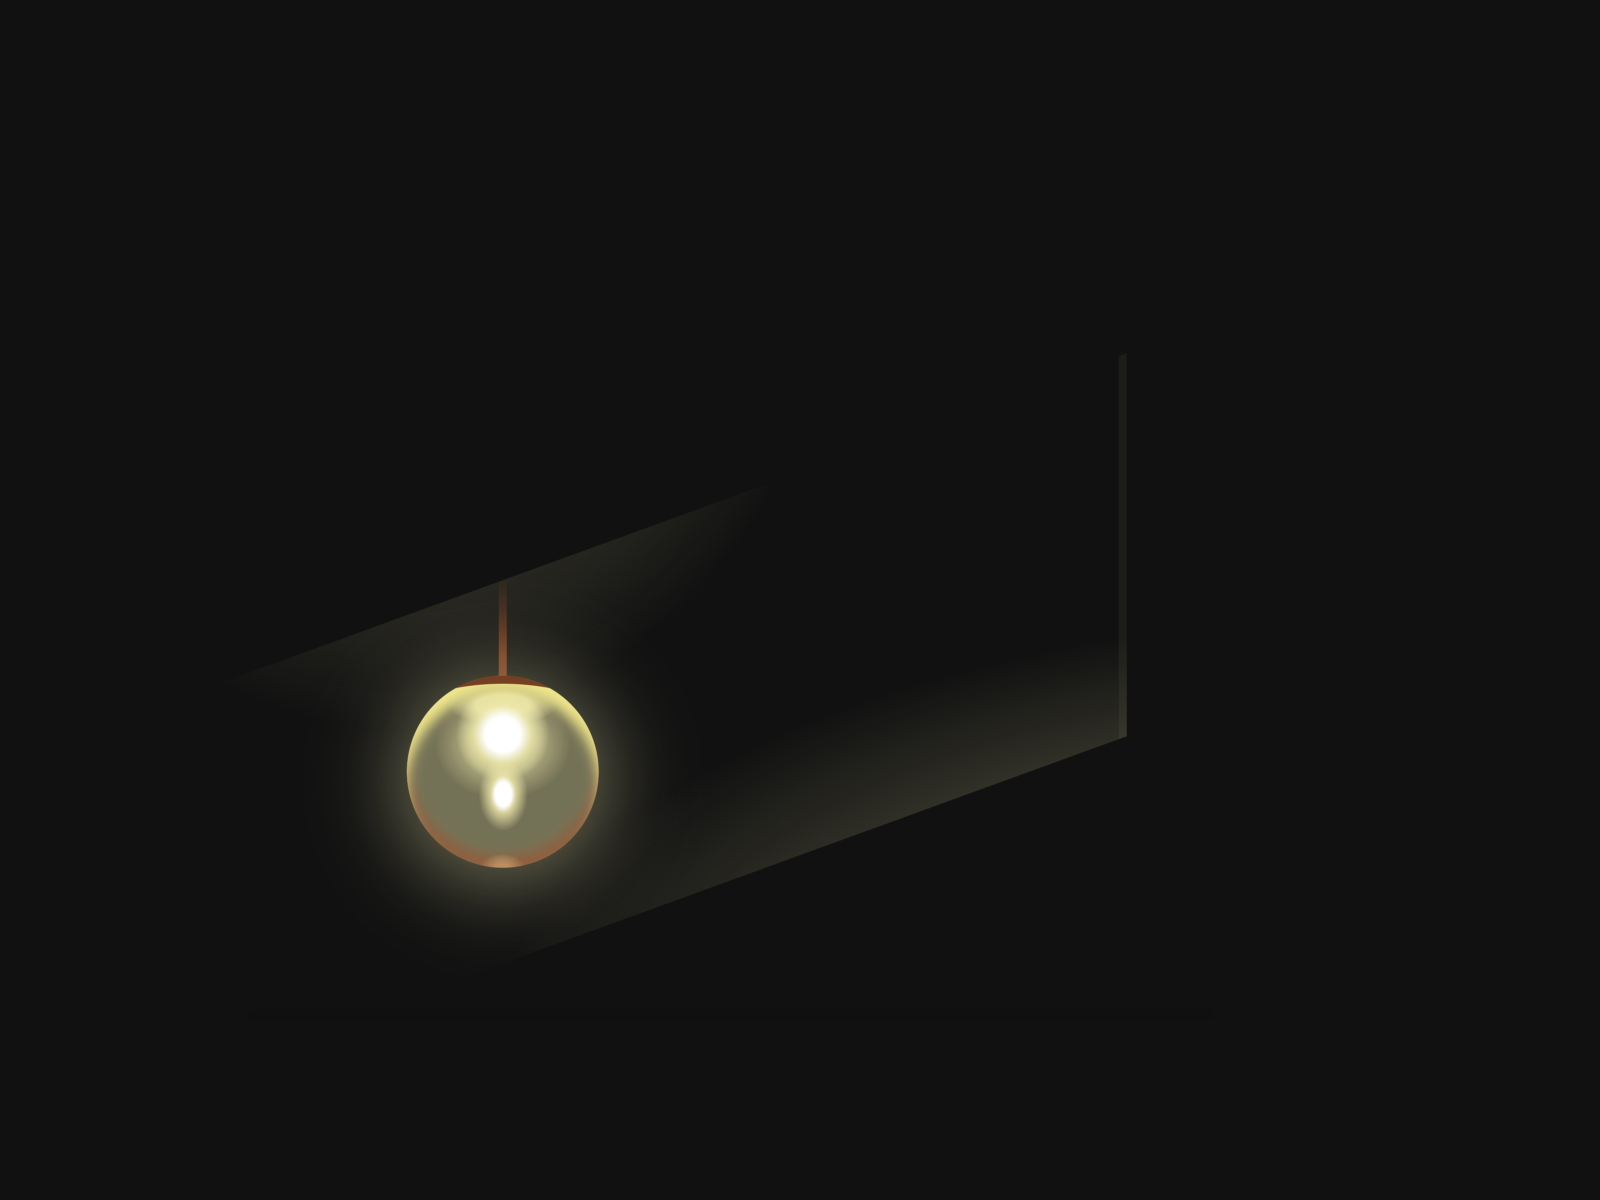 Lámpák - Lámpák - izzók - fénycsövek - Akvarisztika - Vital